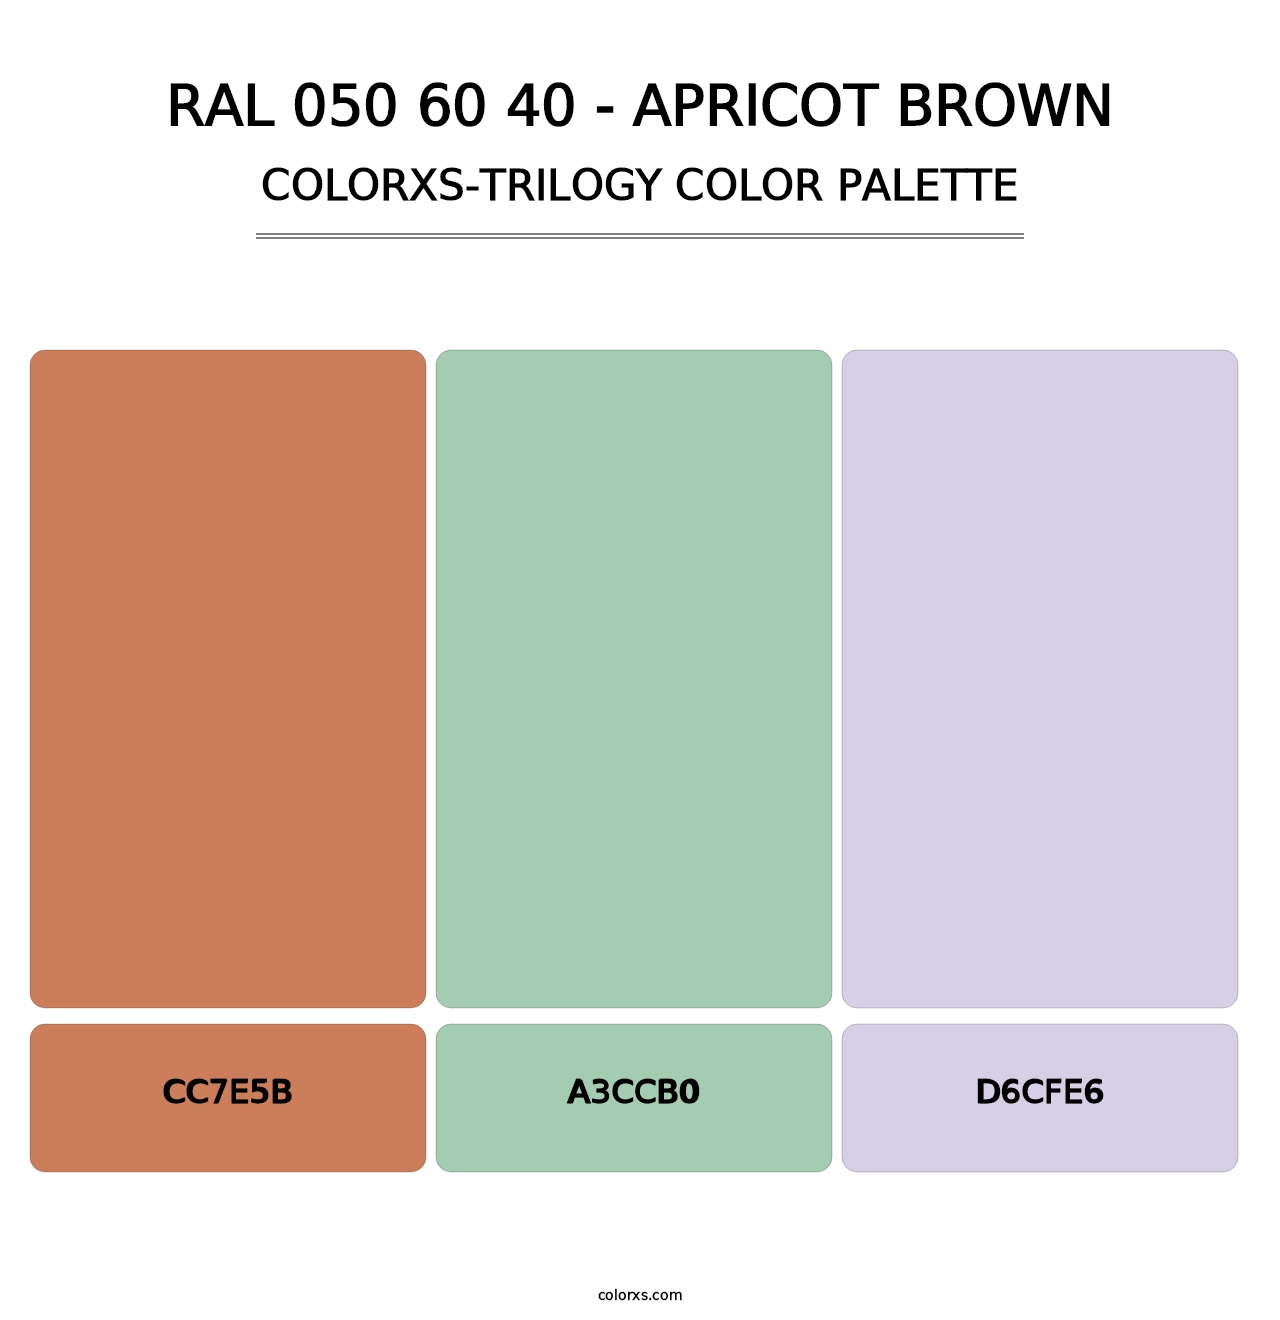 RAL 050 60 40 - Apricot Brown - Colorxs Trilogy Palette